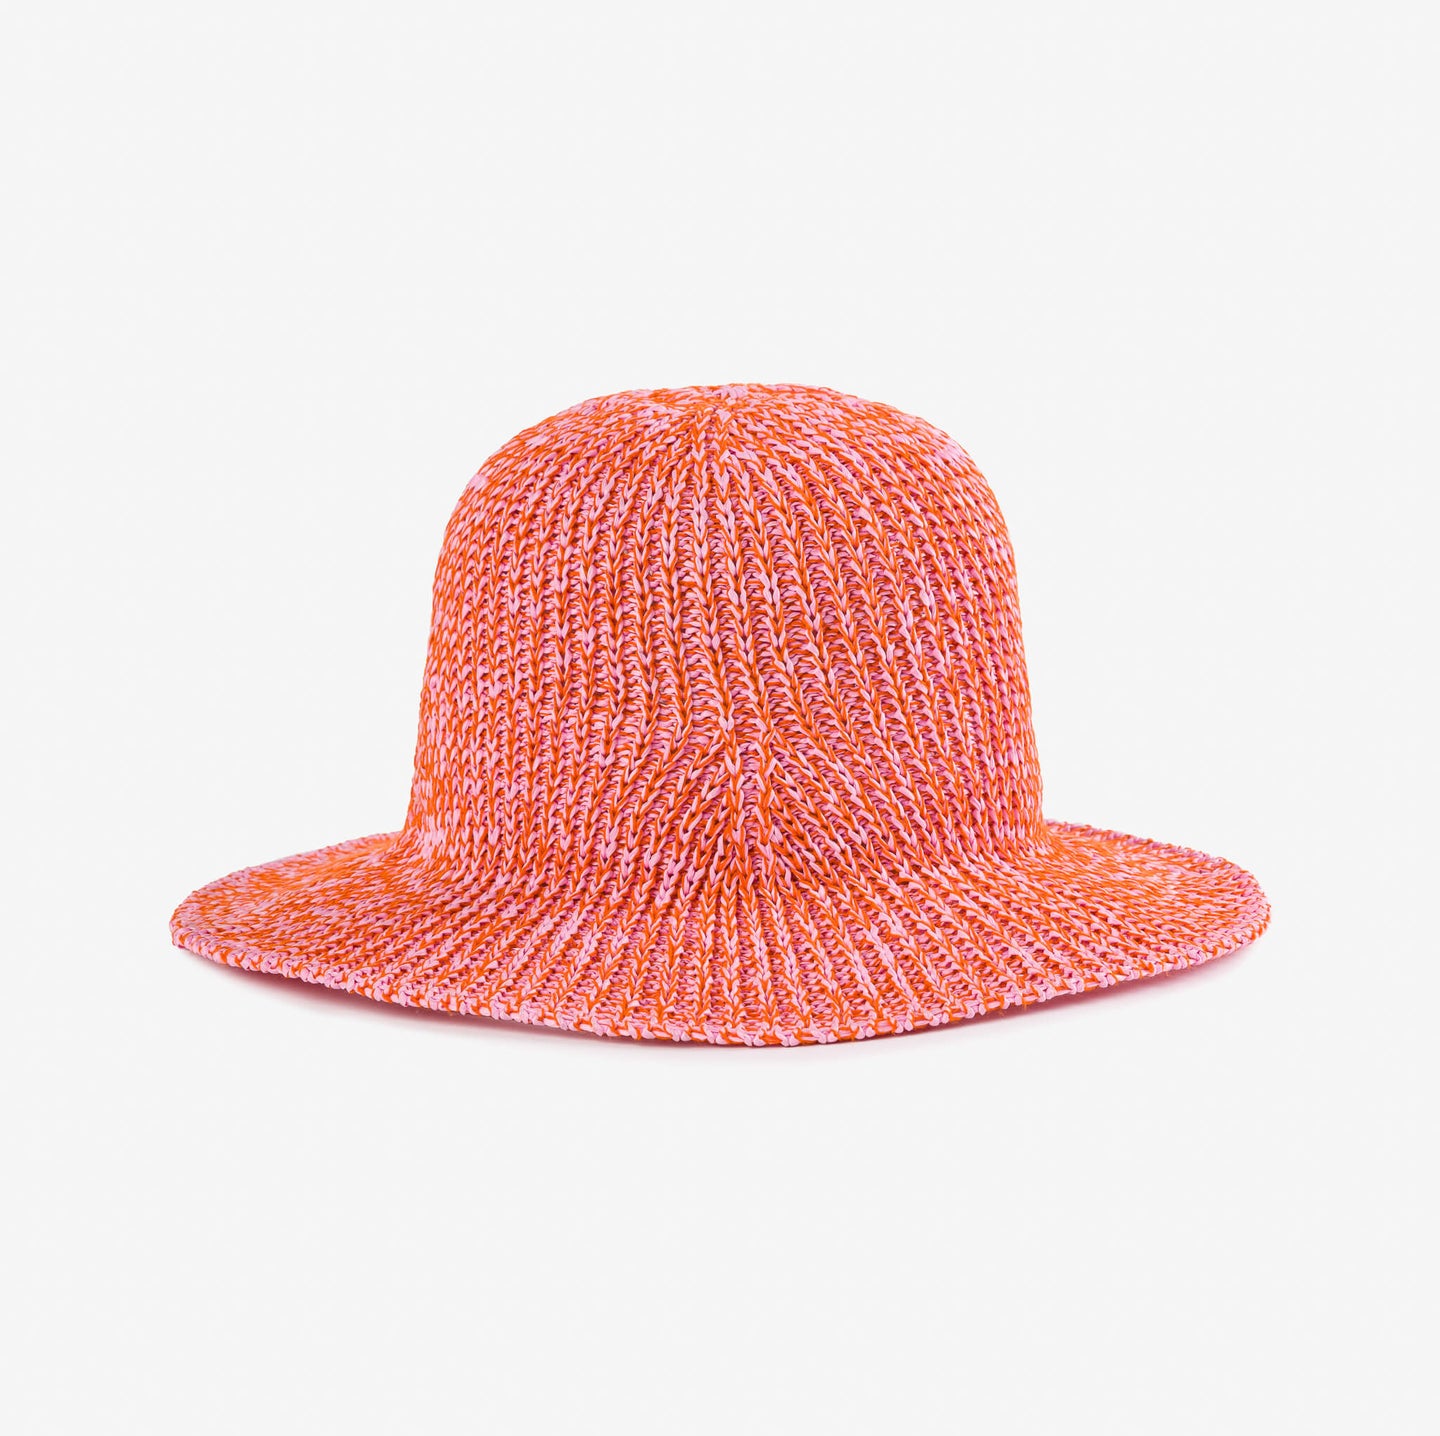 Raffia Sun Hat Crushable Packable Water Resistant